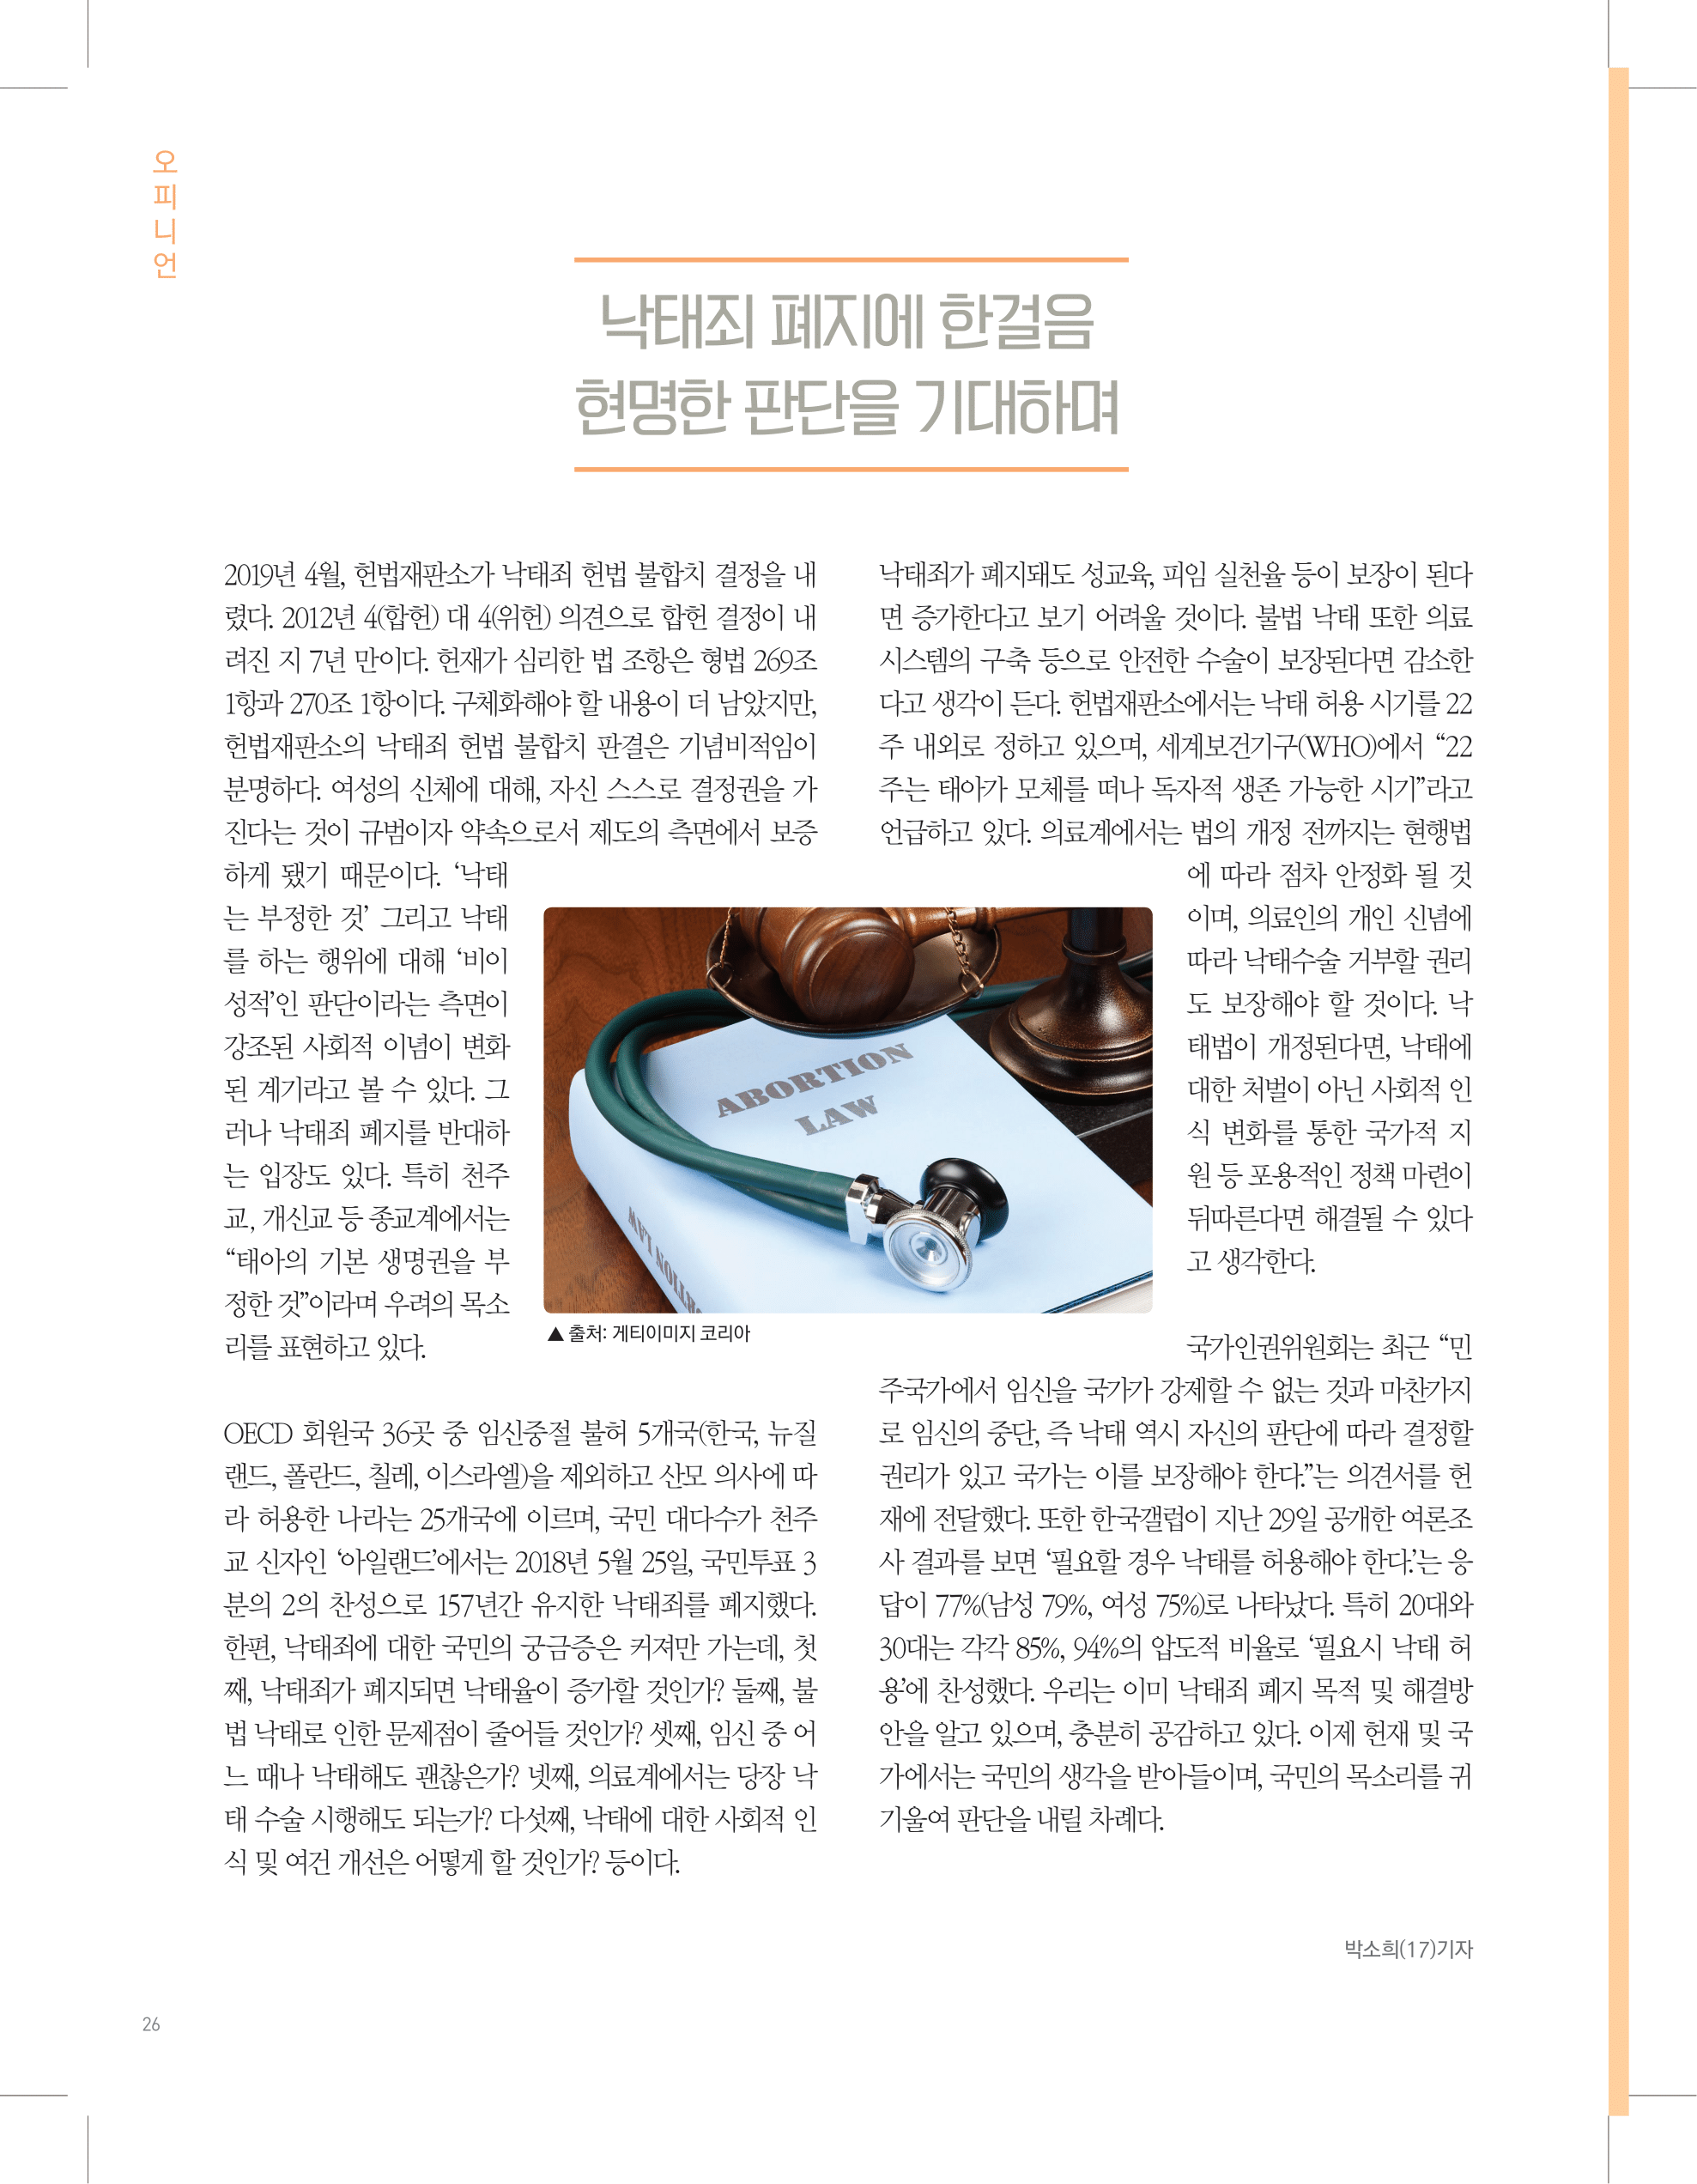 뜻새김 신문 73호 26